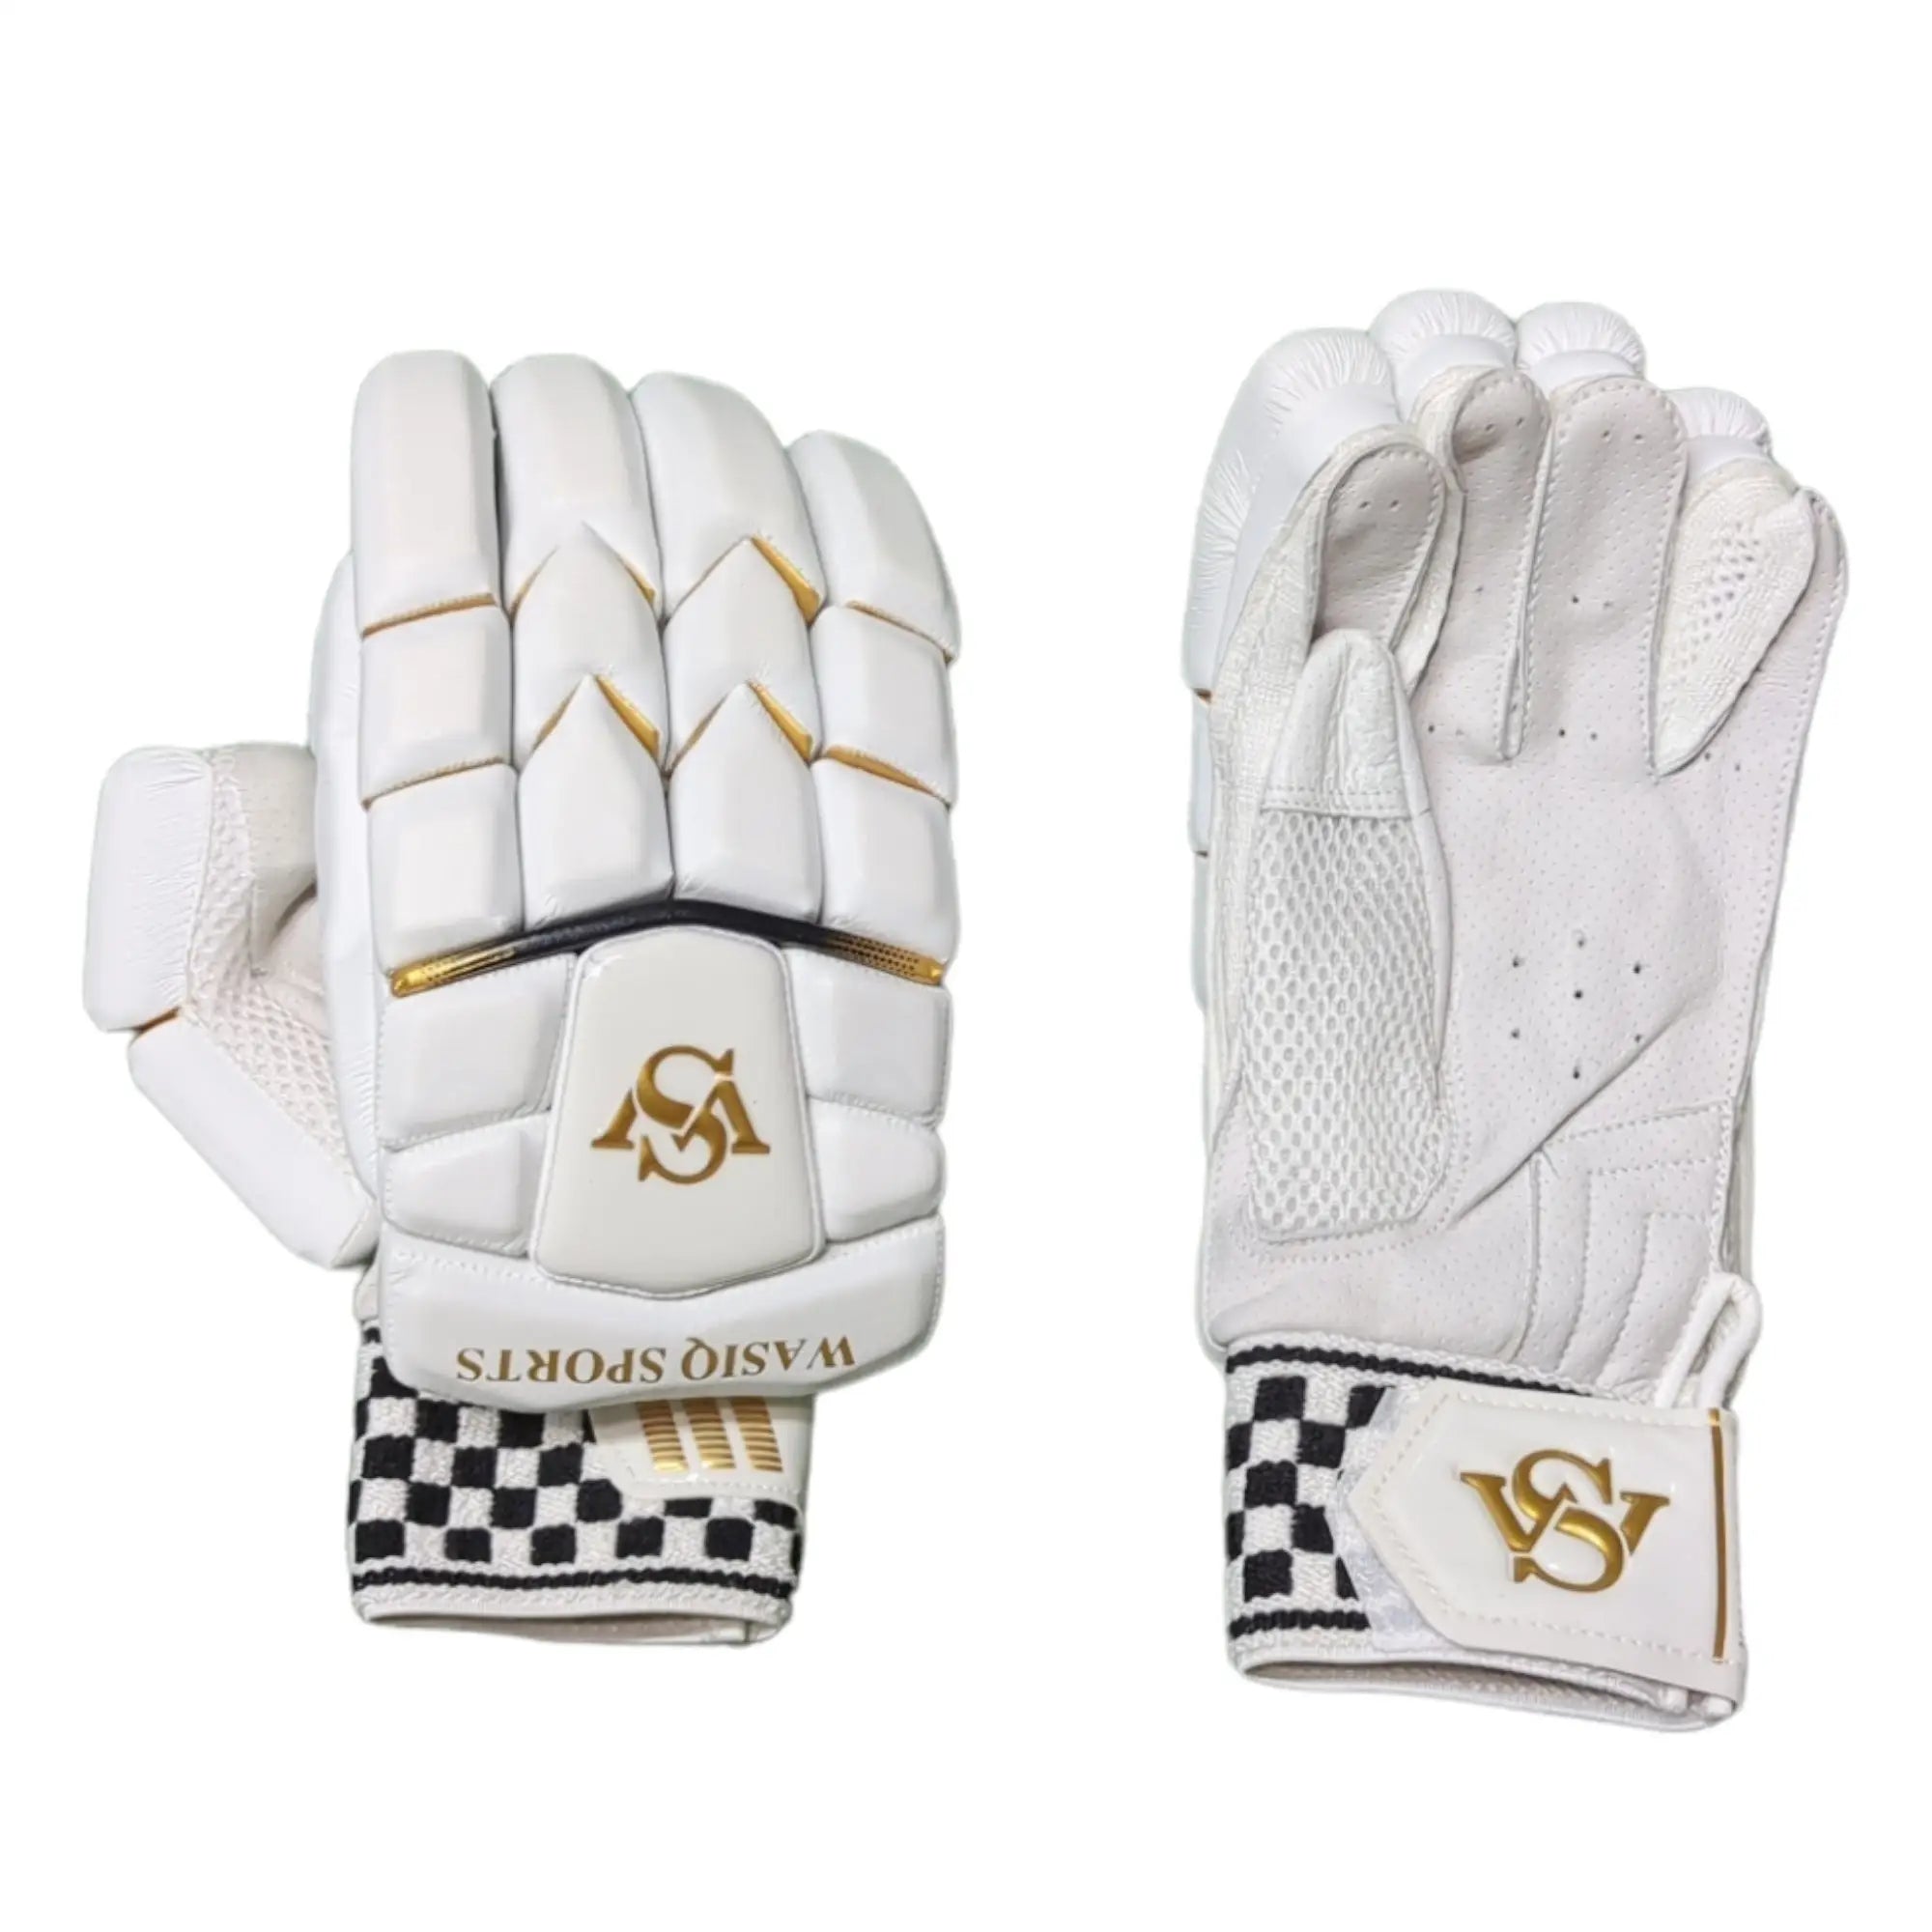 WS Pro Cricket Gloves White - Adult RH - GLOVE - BATTING